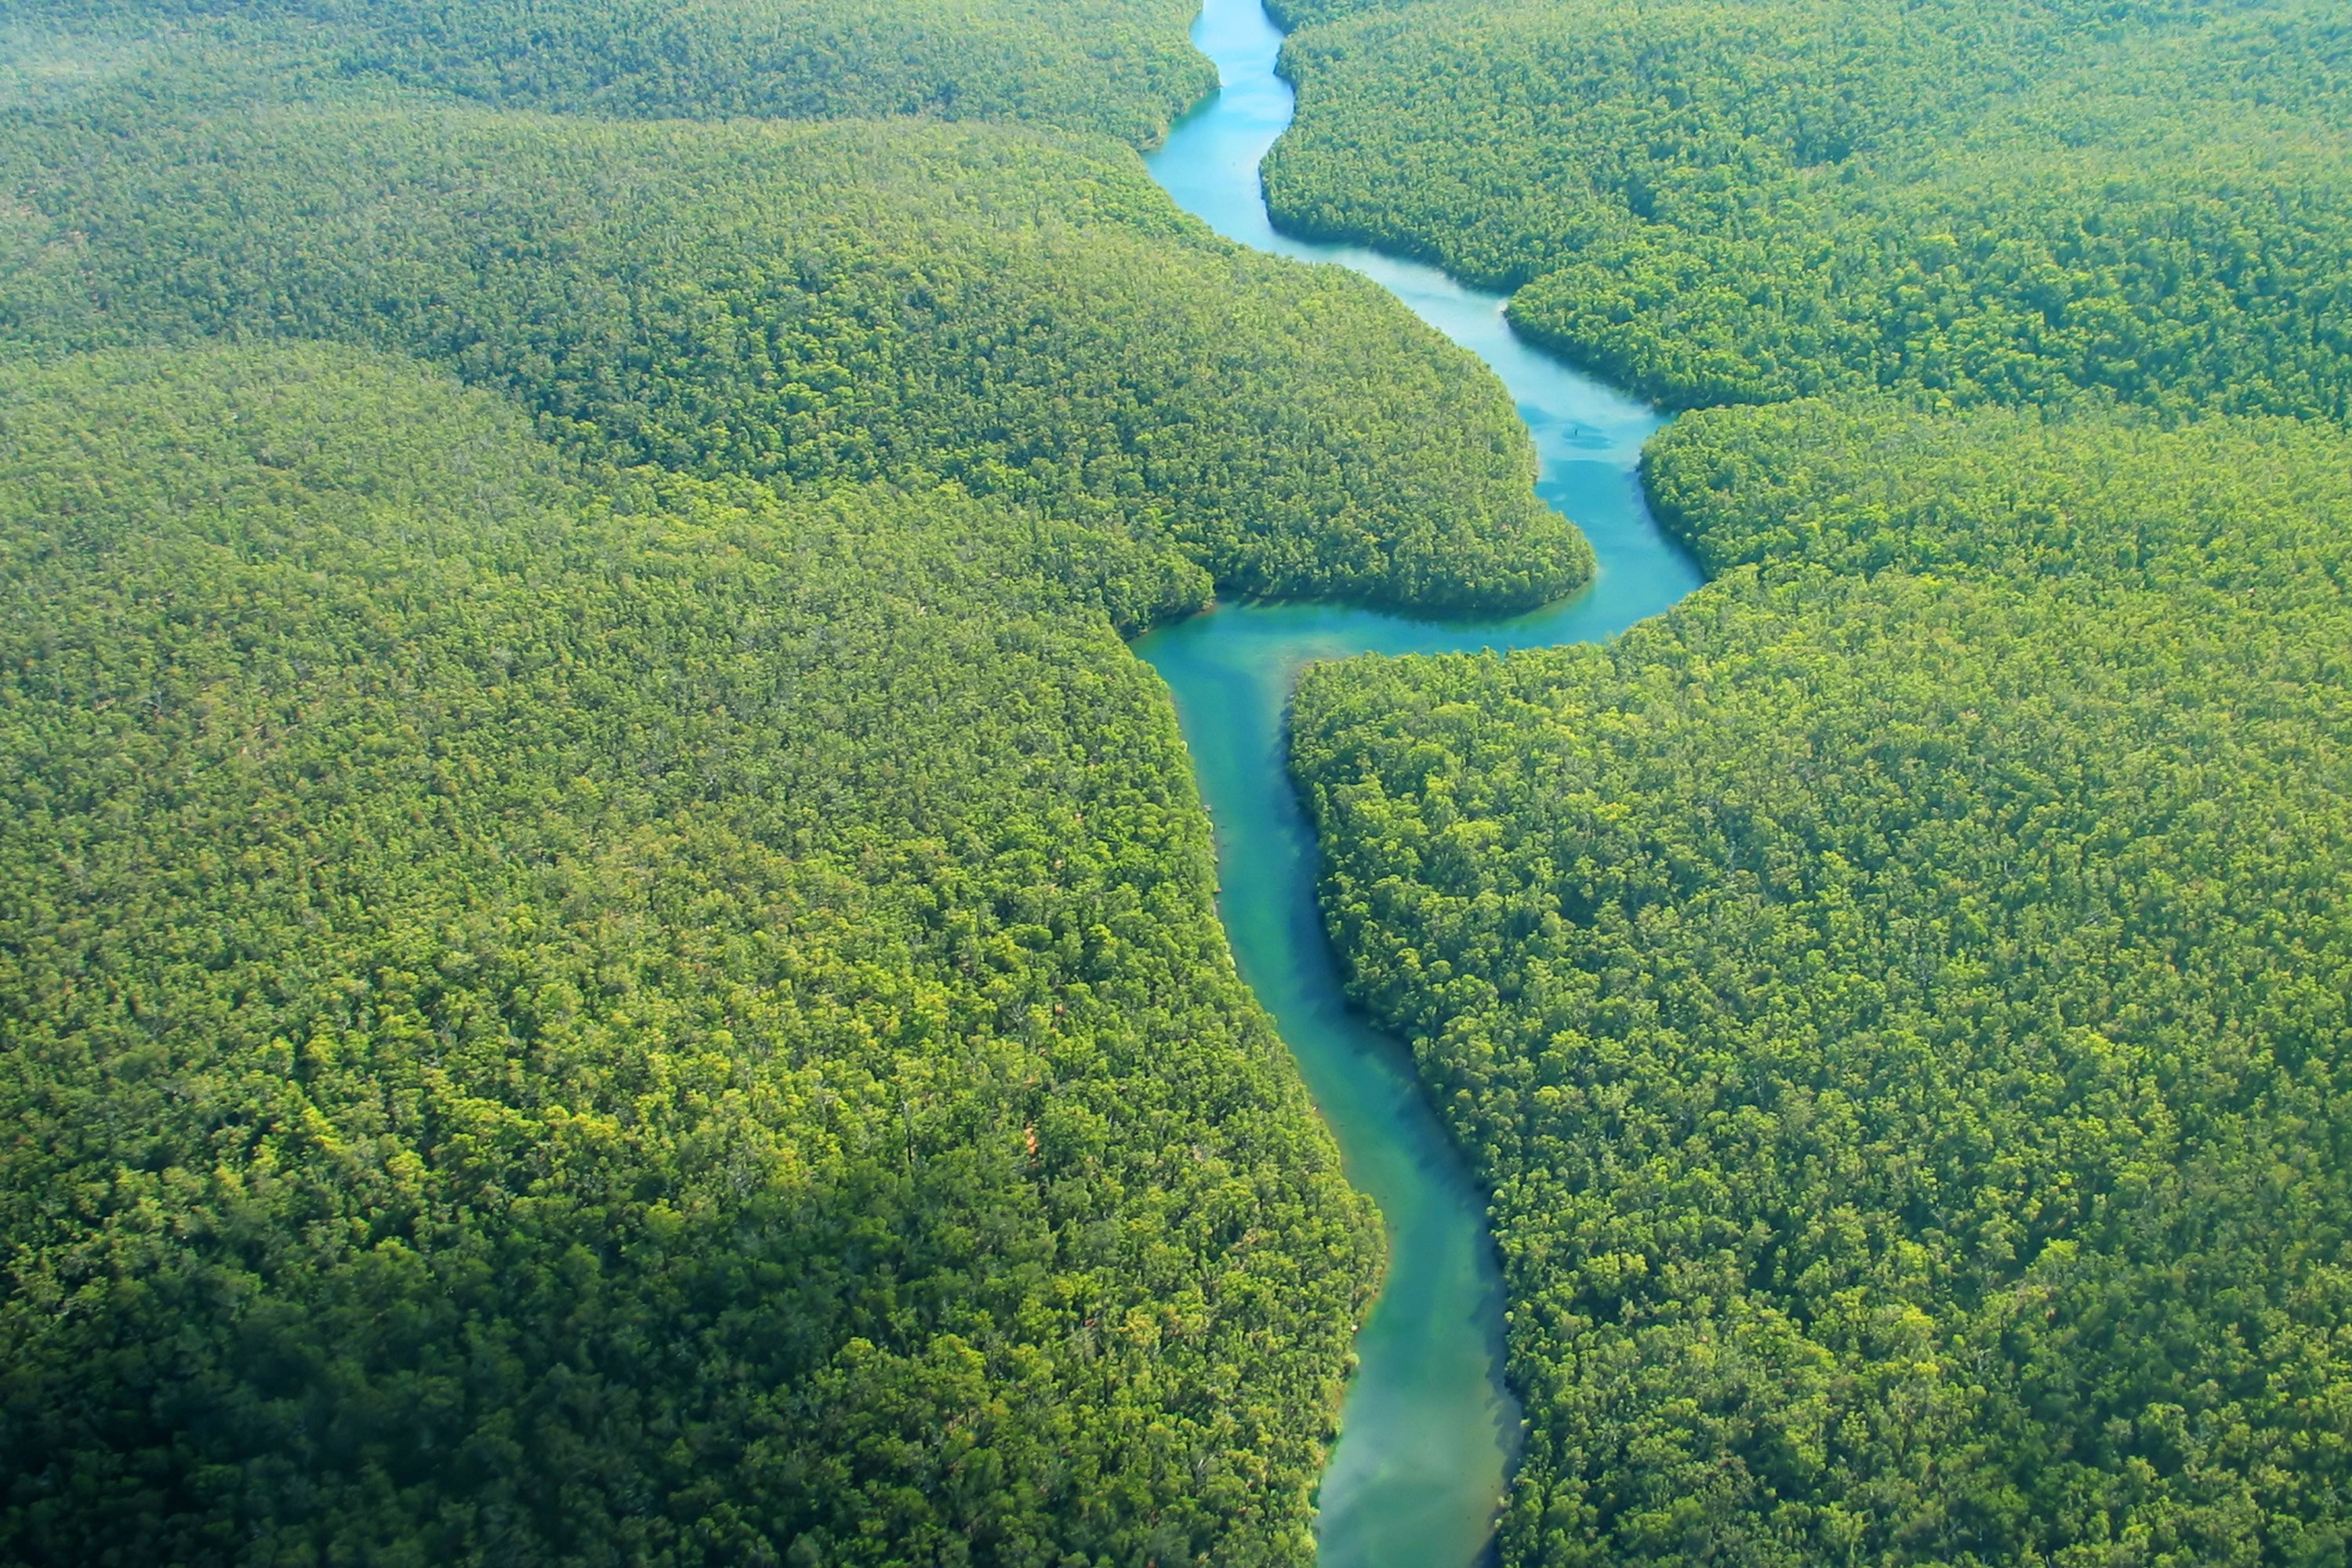 Амазонка полноводна круглый год. Бразилия Амазонская низменность. Южная Америка река Амазонка. Мангровые леса Амазонии. Укаяли река в Южной Америке.